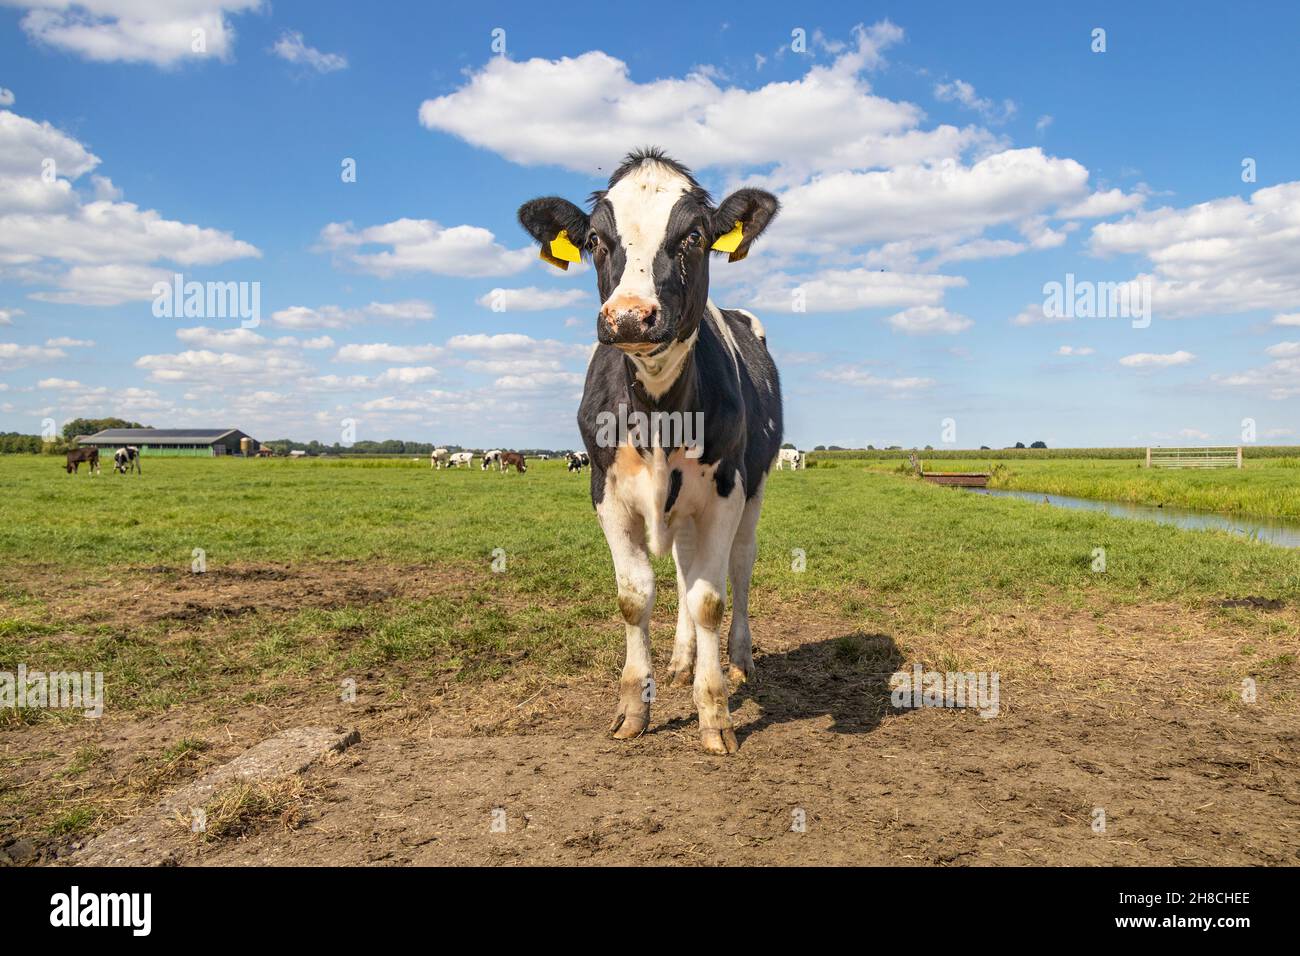 Jeune vache noire et blanche, à l'aspect ridicule, venant en sens inverse et approchant en marchant vers la caméra Banque D'Images